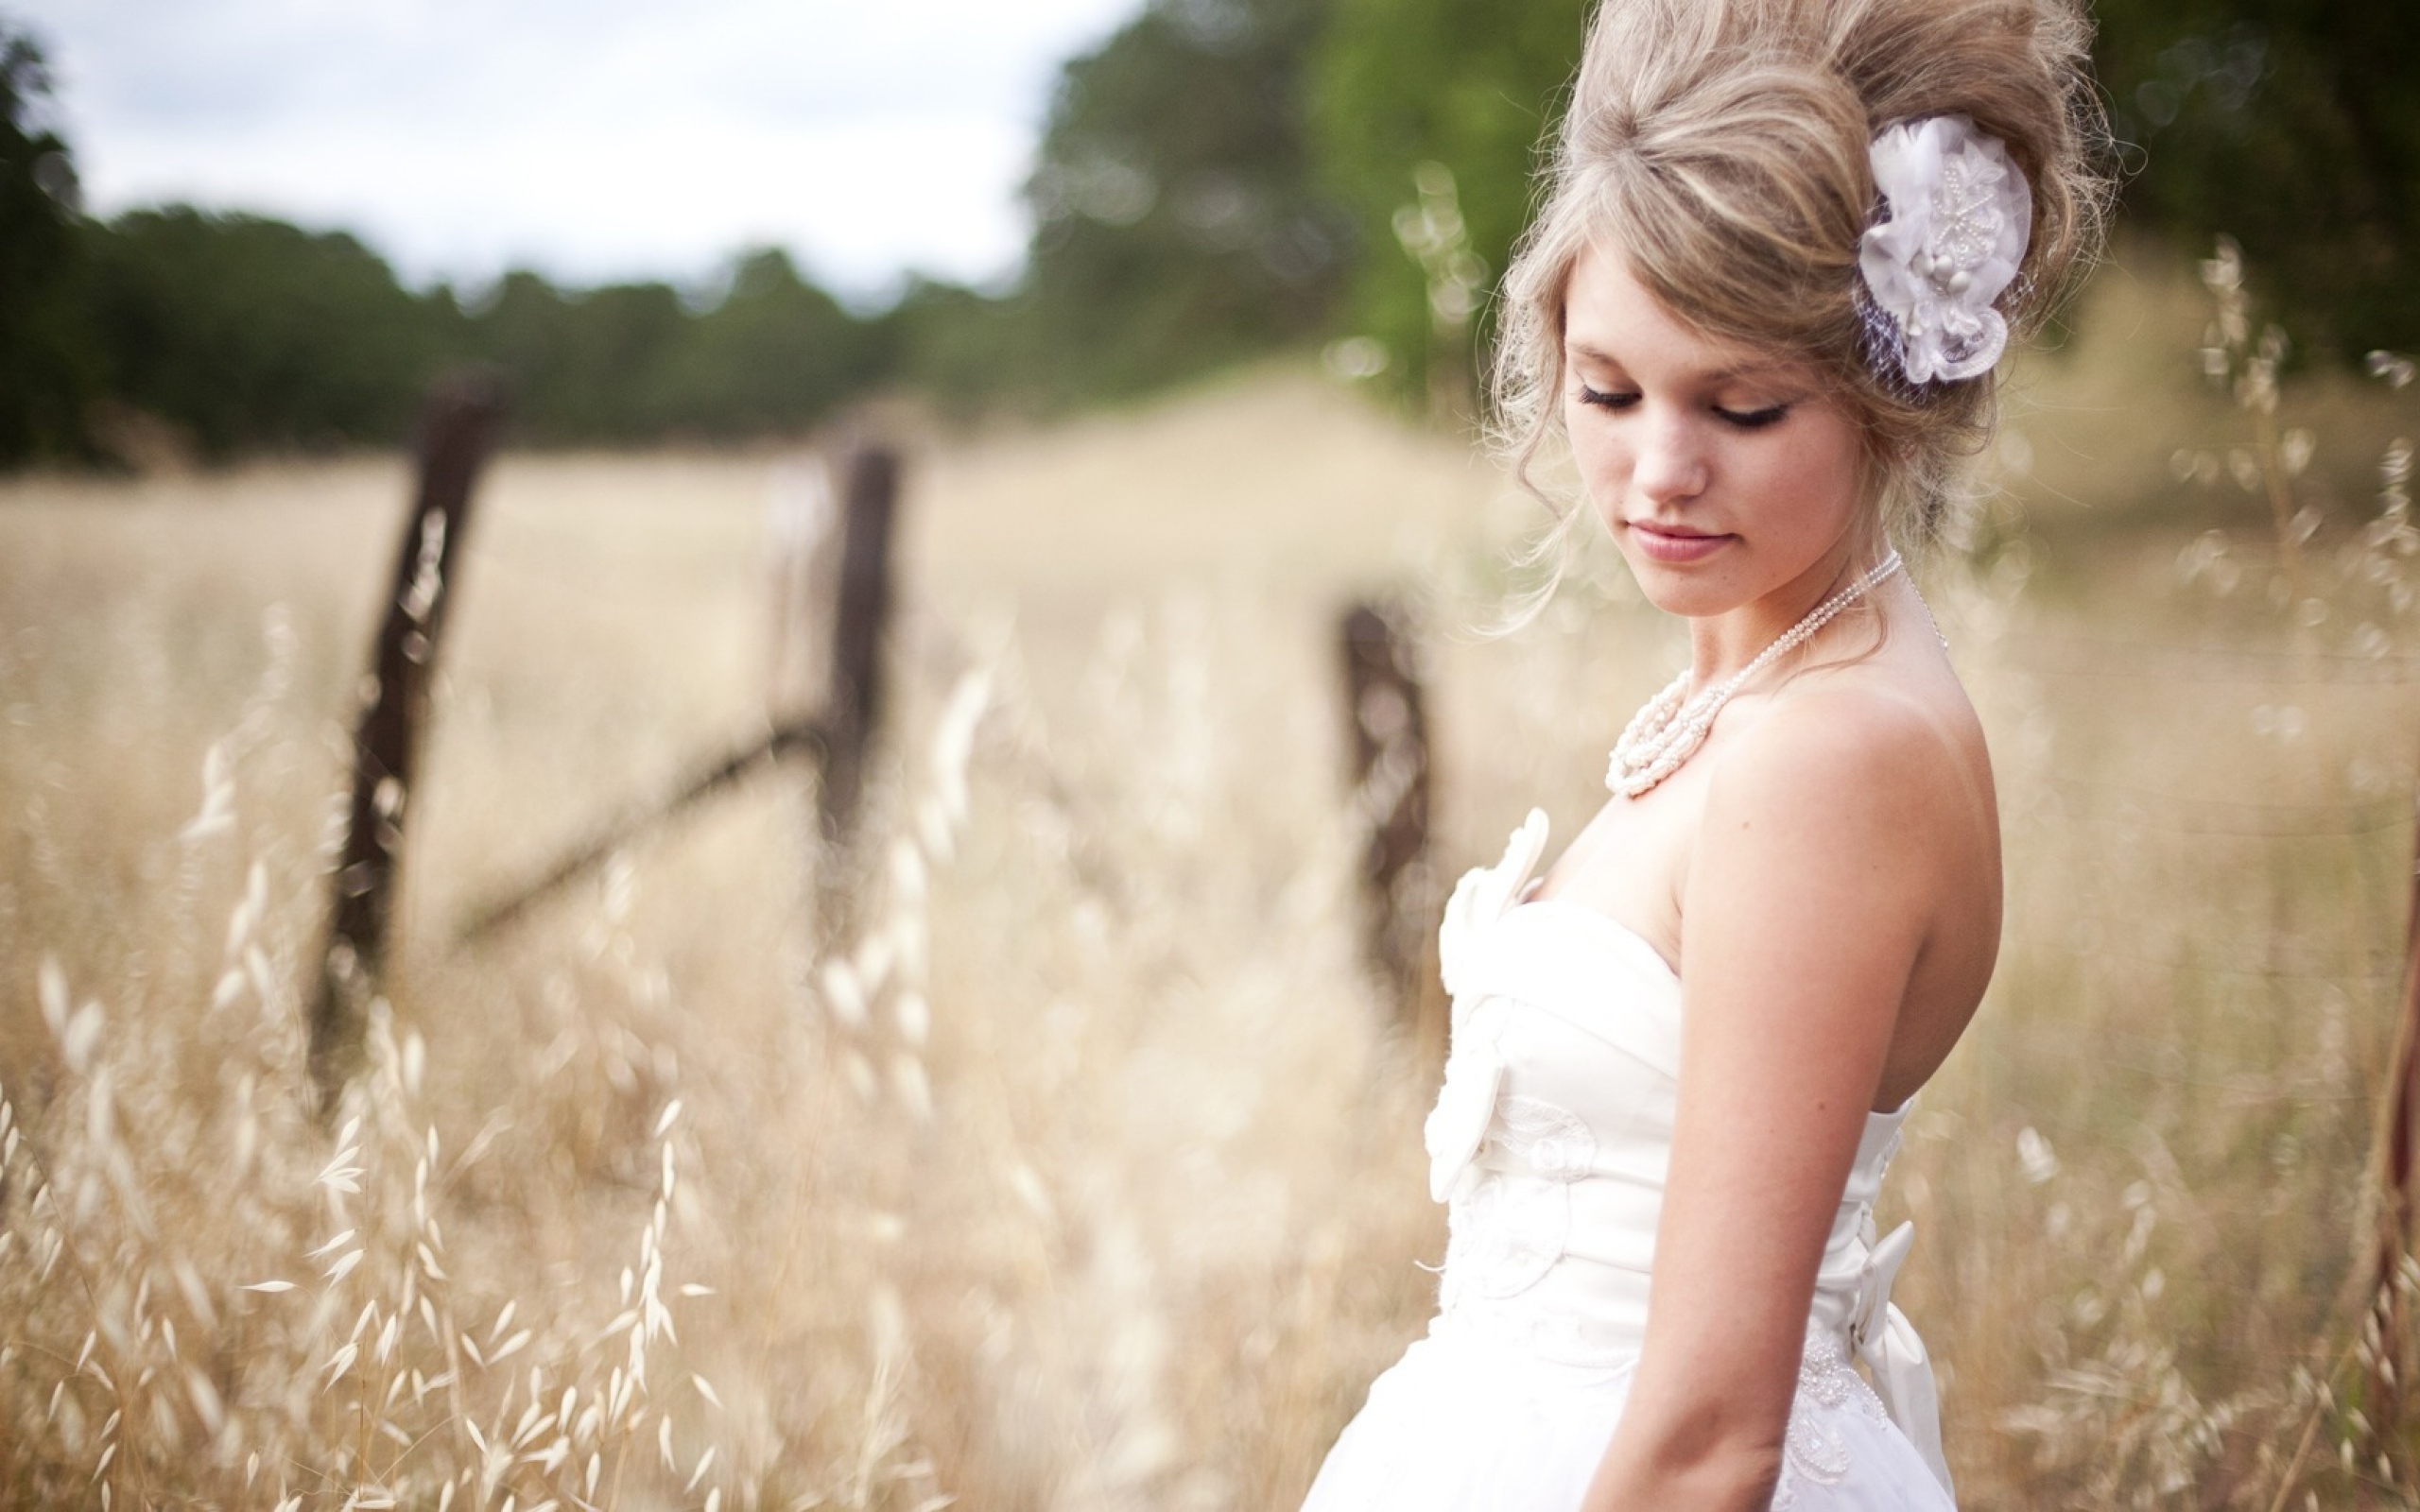 Любимая прическа прямоволосой девицы. Девушка невеста. Невеста в поле. Прическа в деревенском стиле. Прическа для фотосессии в поле.